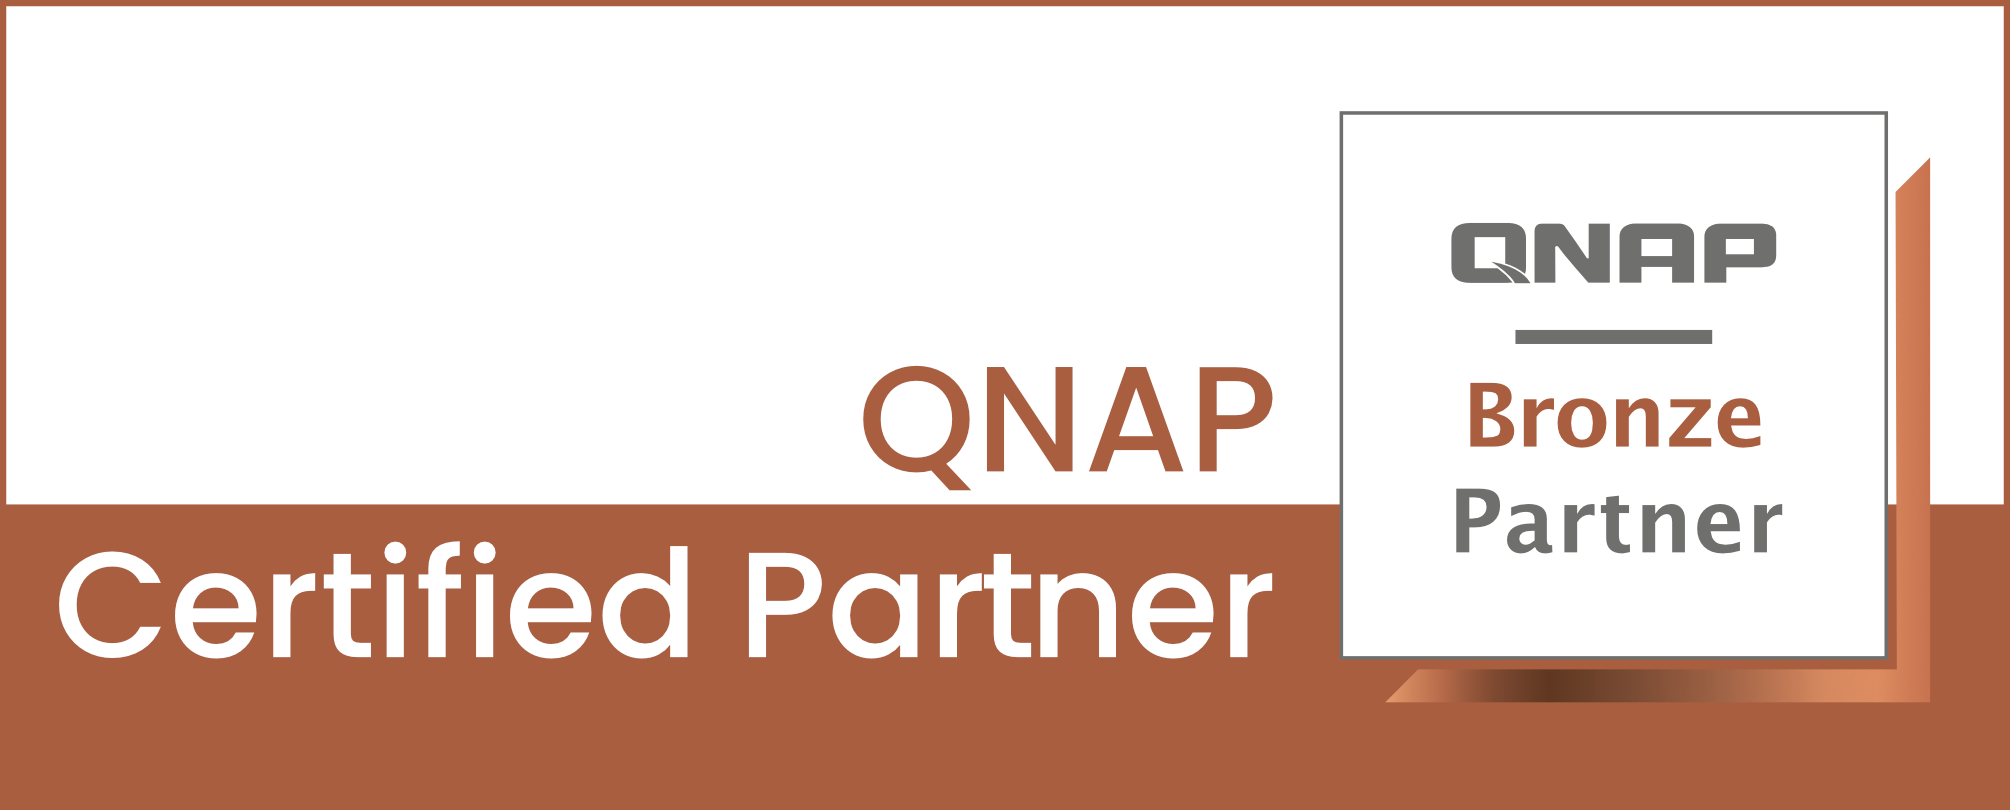 QNAP Certified Partner Bronze